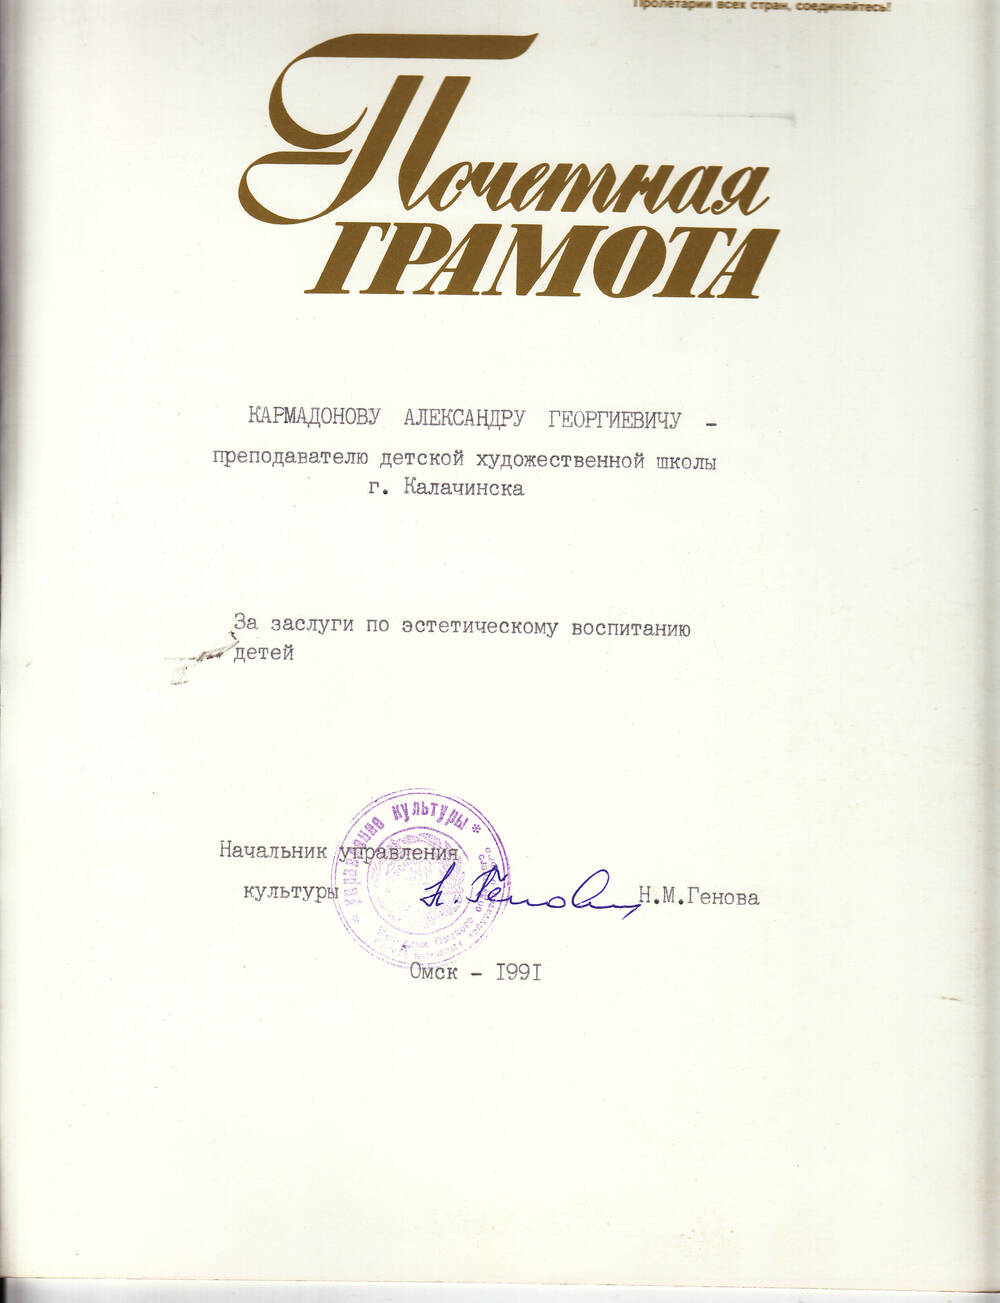 Почетная грамота Александра Георгиевича Кармадонова за заслуги по эстетическому воспитанию детей